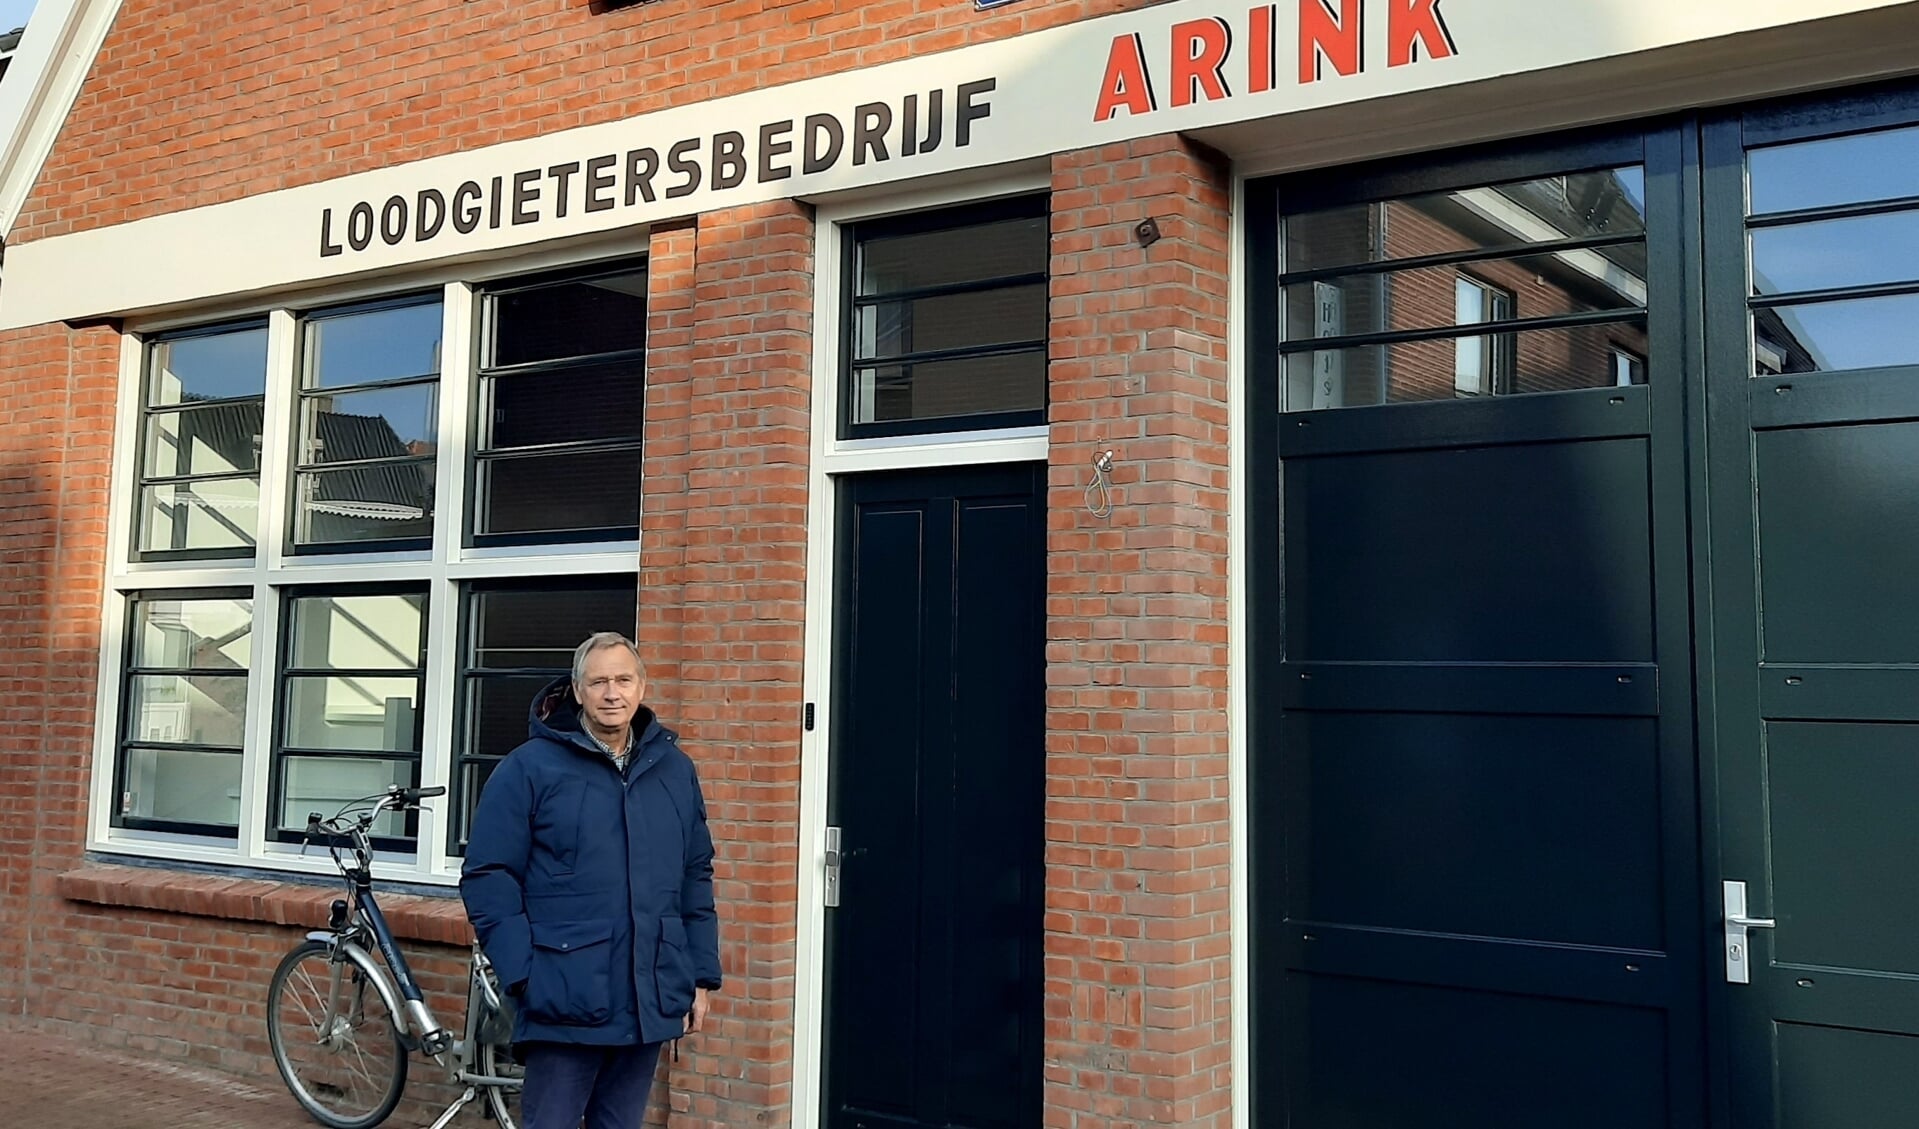 Peter Weyn Banningh bij zijn pand waar vroeger loodgietersbedrijf Arink gevestigd was. Foto: Kyra Broshuis